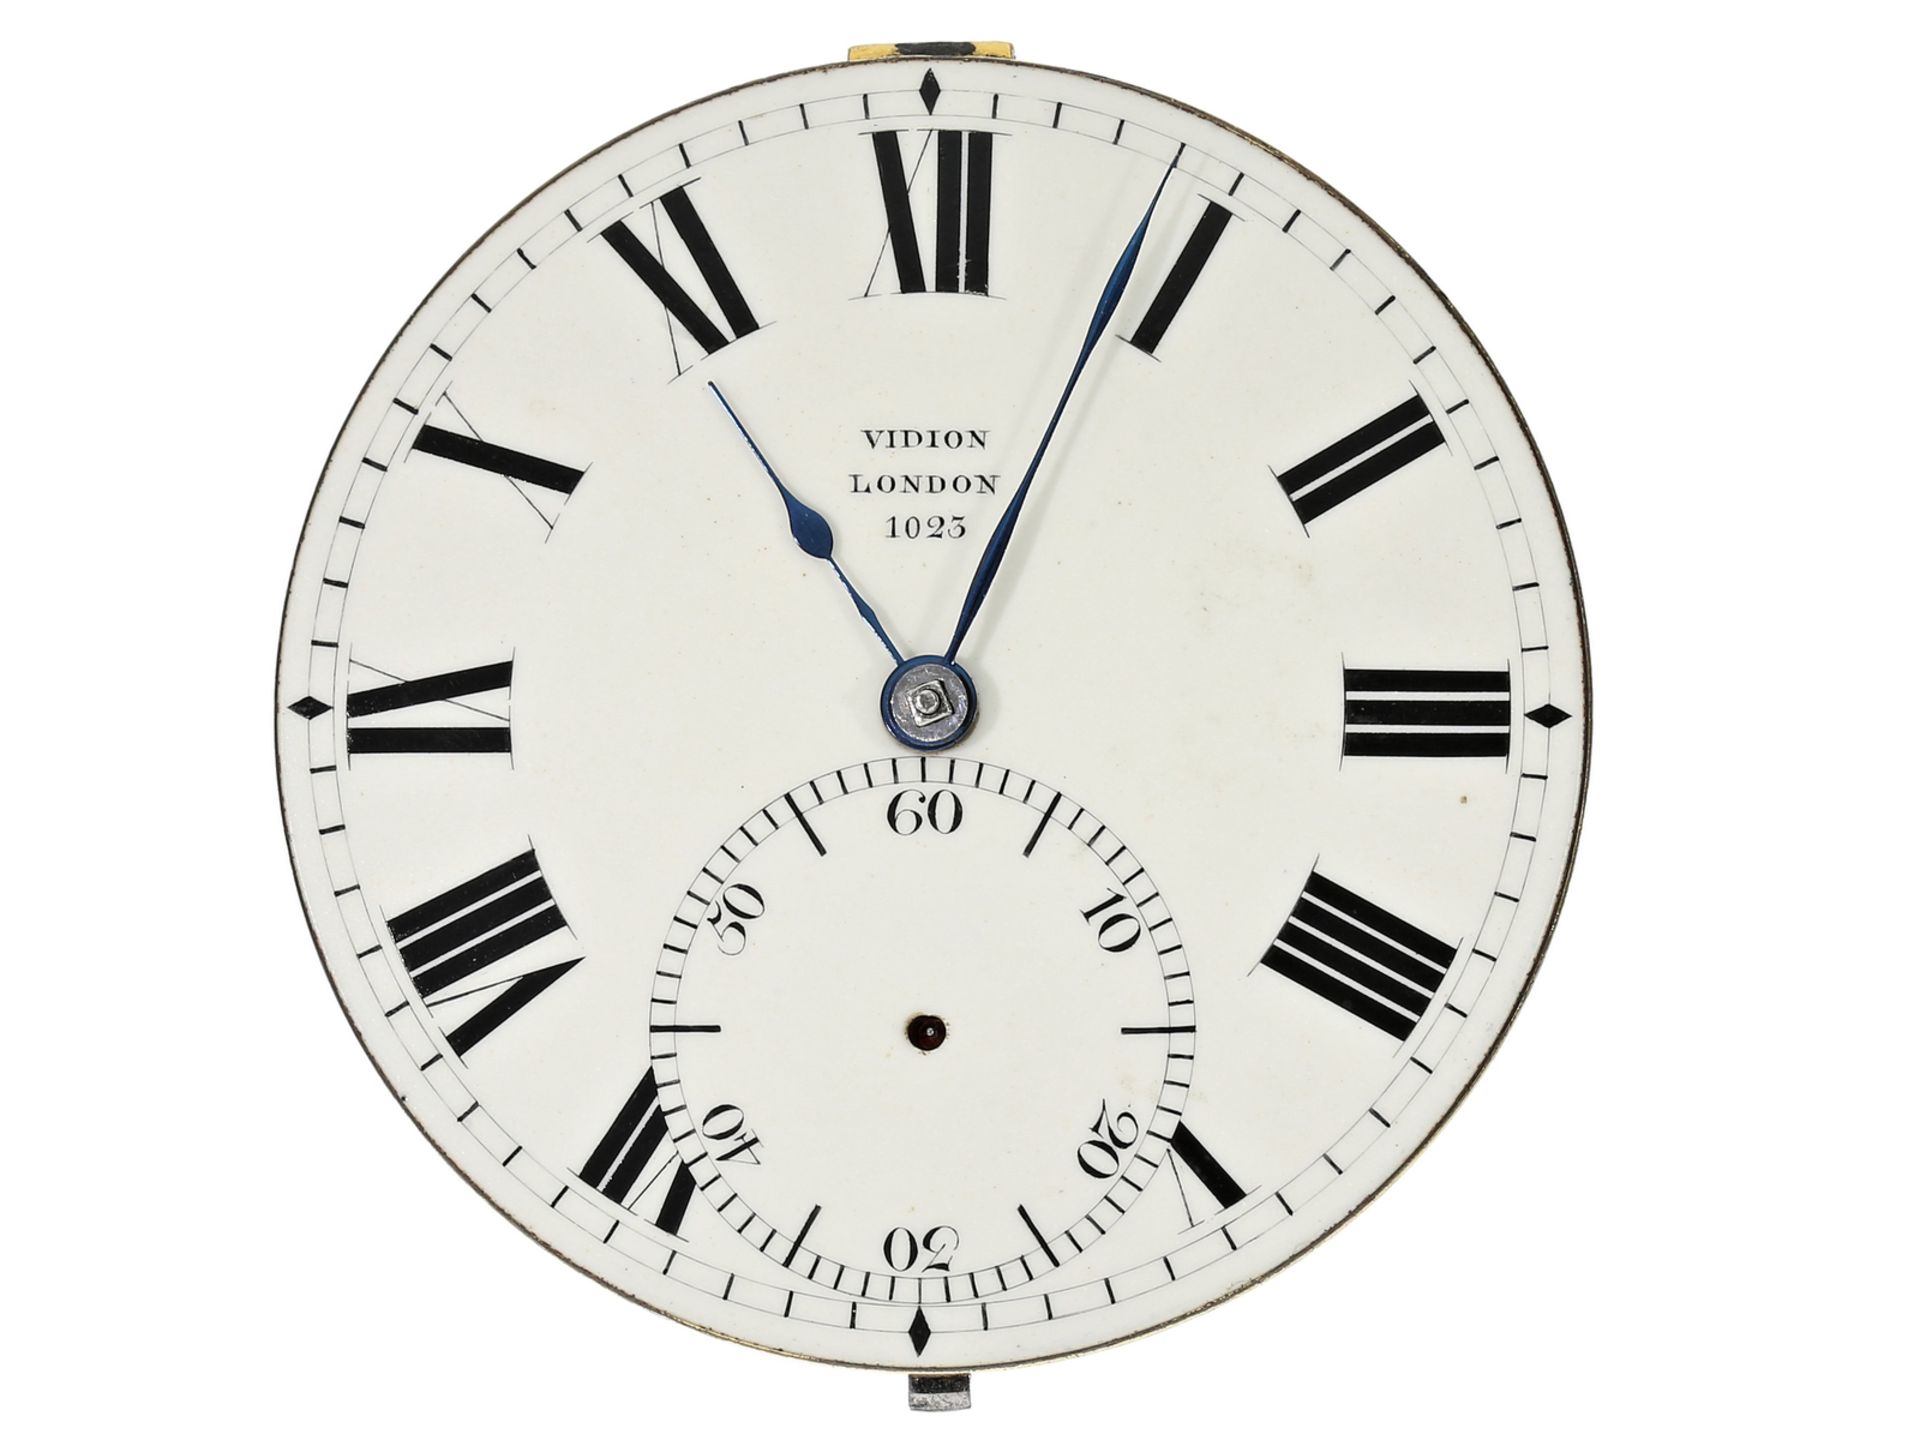 Taschenuhr: interessantes Chronometerwerk nach Earnshaw, R.H. Vidion London No.1023, ca. 1840